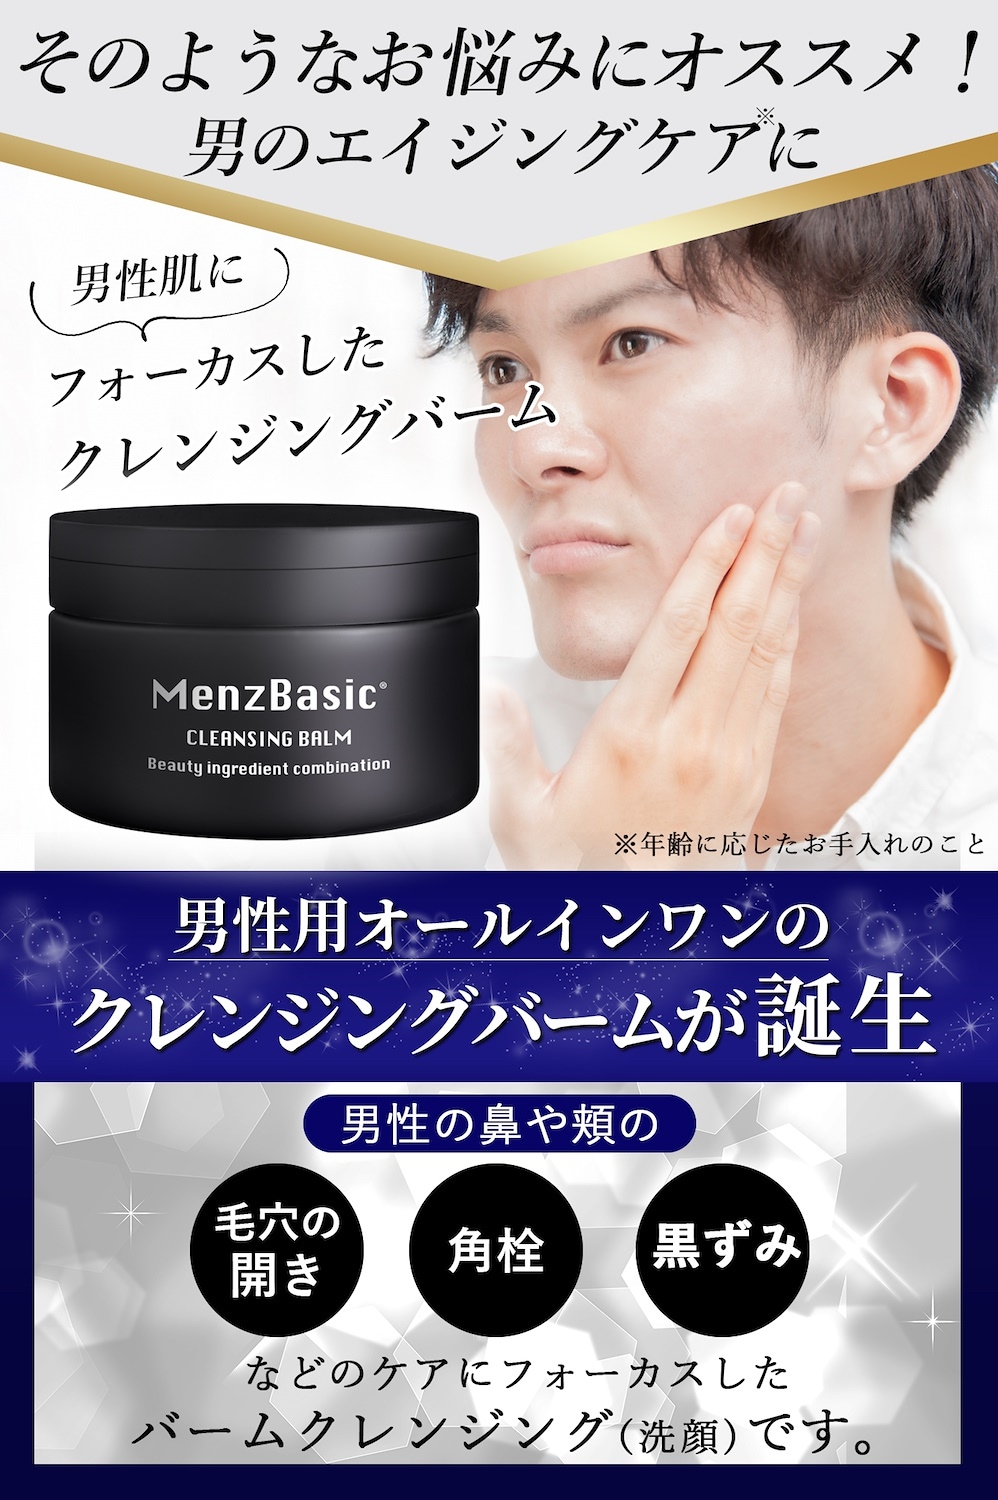 送料無料限定セール中 クレンジングバーム メンズ 日本製 洗顔 毛穴 角質 メンズベーシック 黒ずみケア 90g